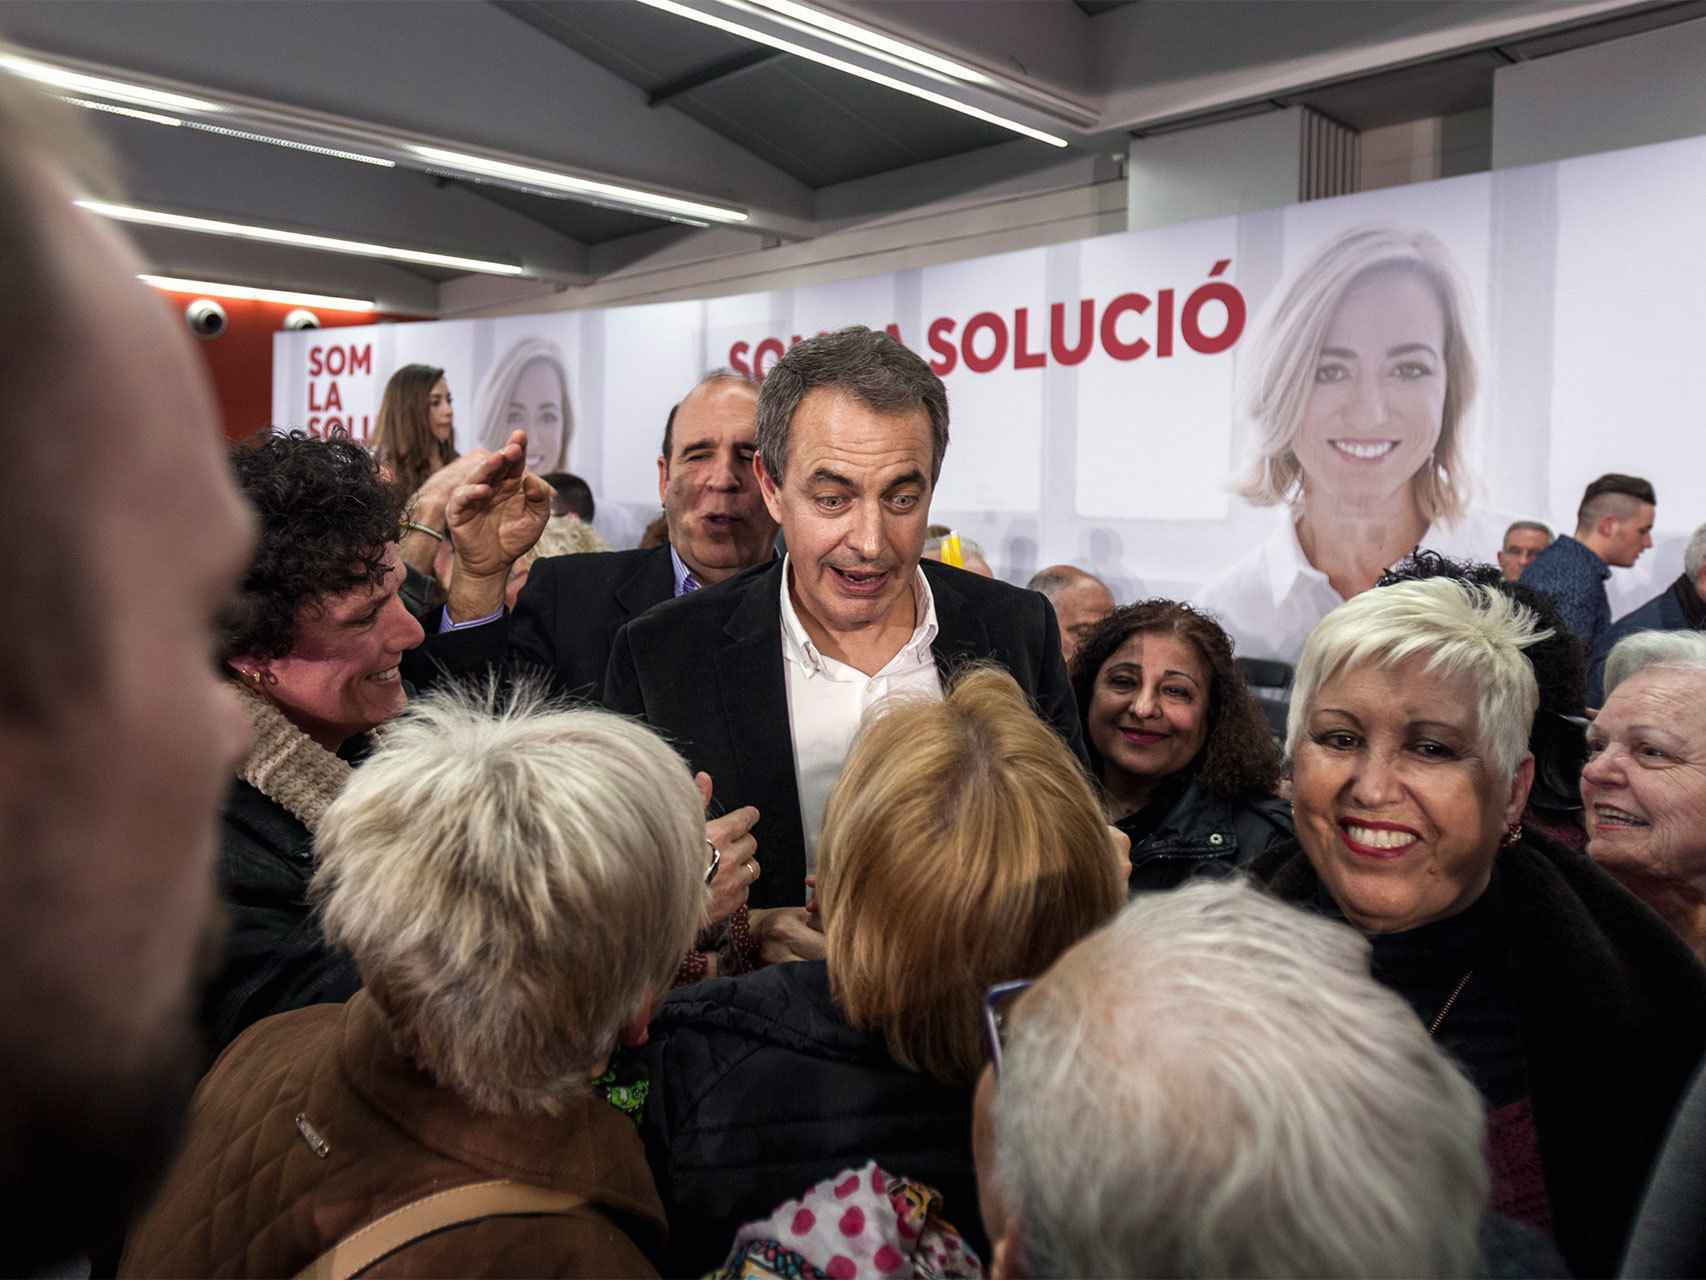 Tras el mitin, comienza el festival de selfies mientras Zapatero avanza hacia la salida.